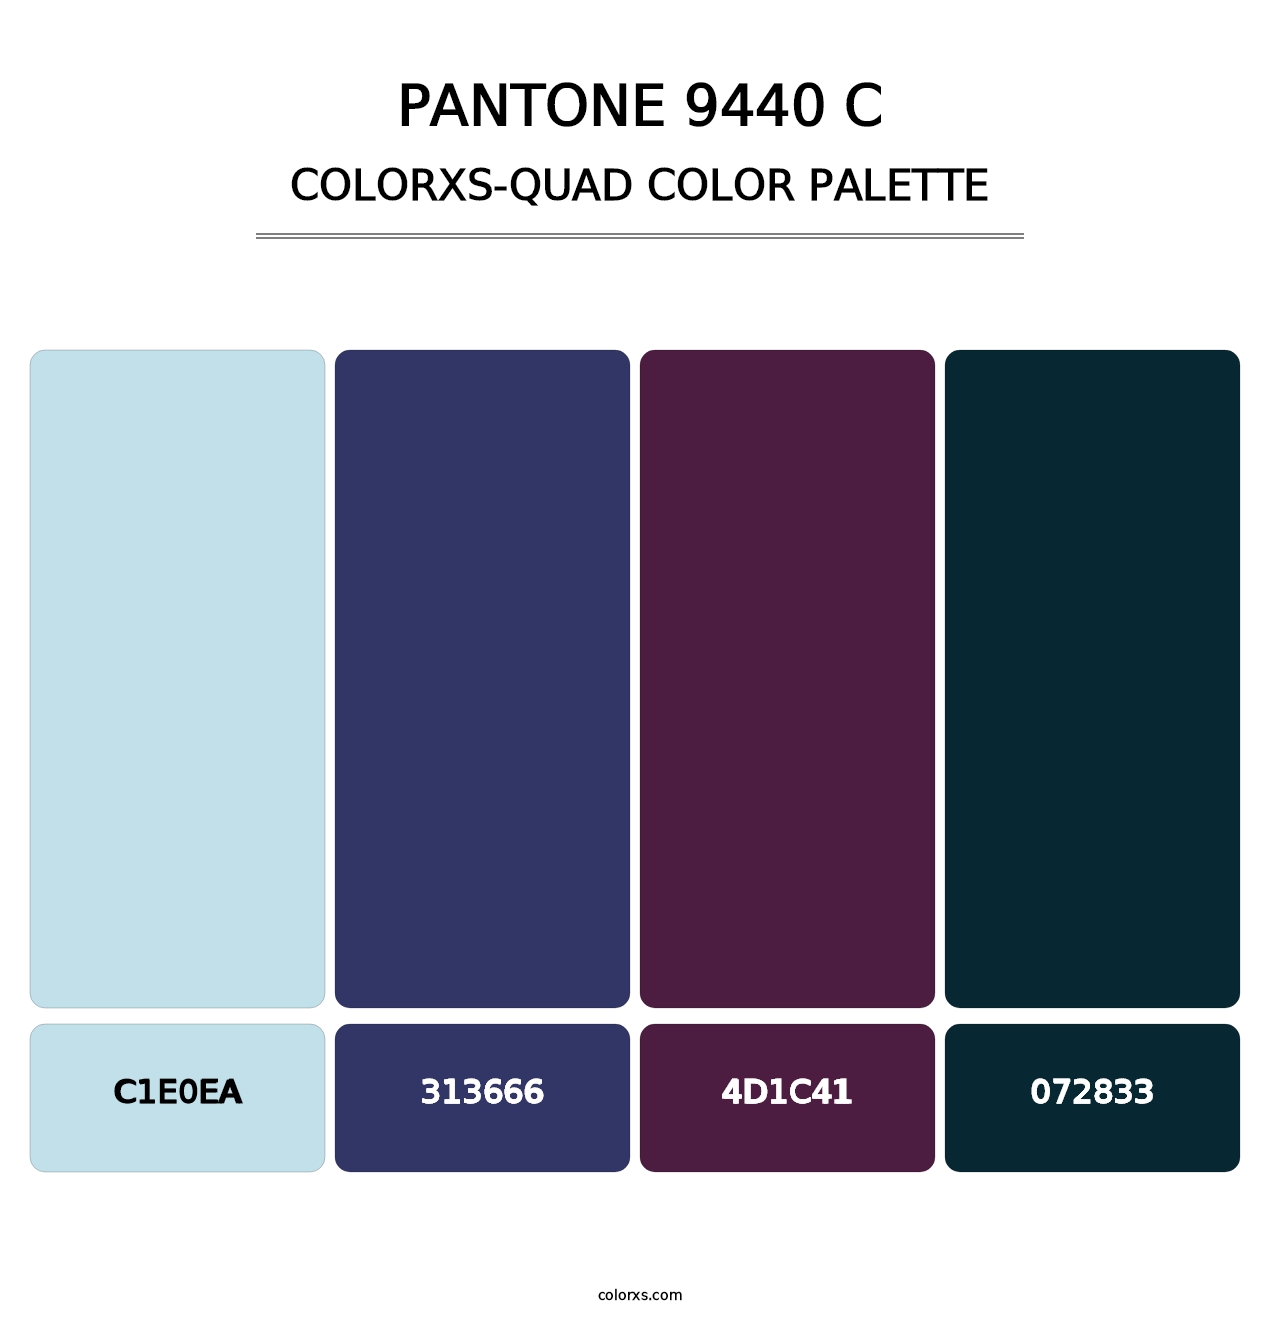 PANTONE 9440 C - Colorxs Quad Palette